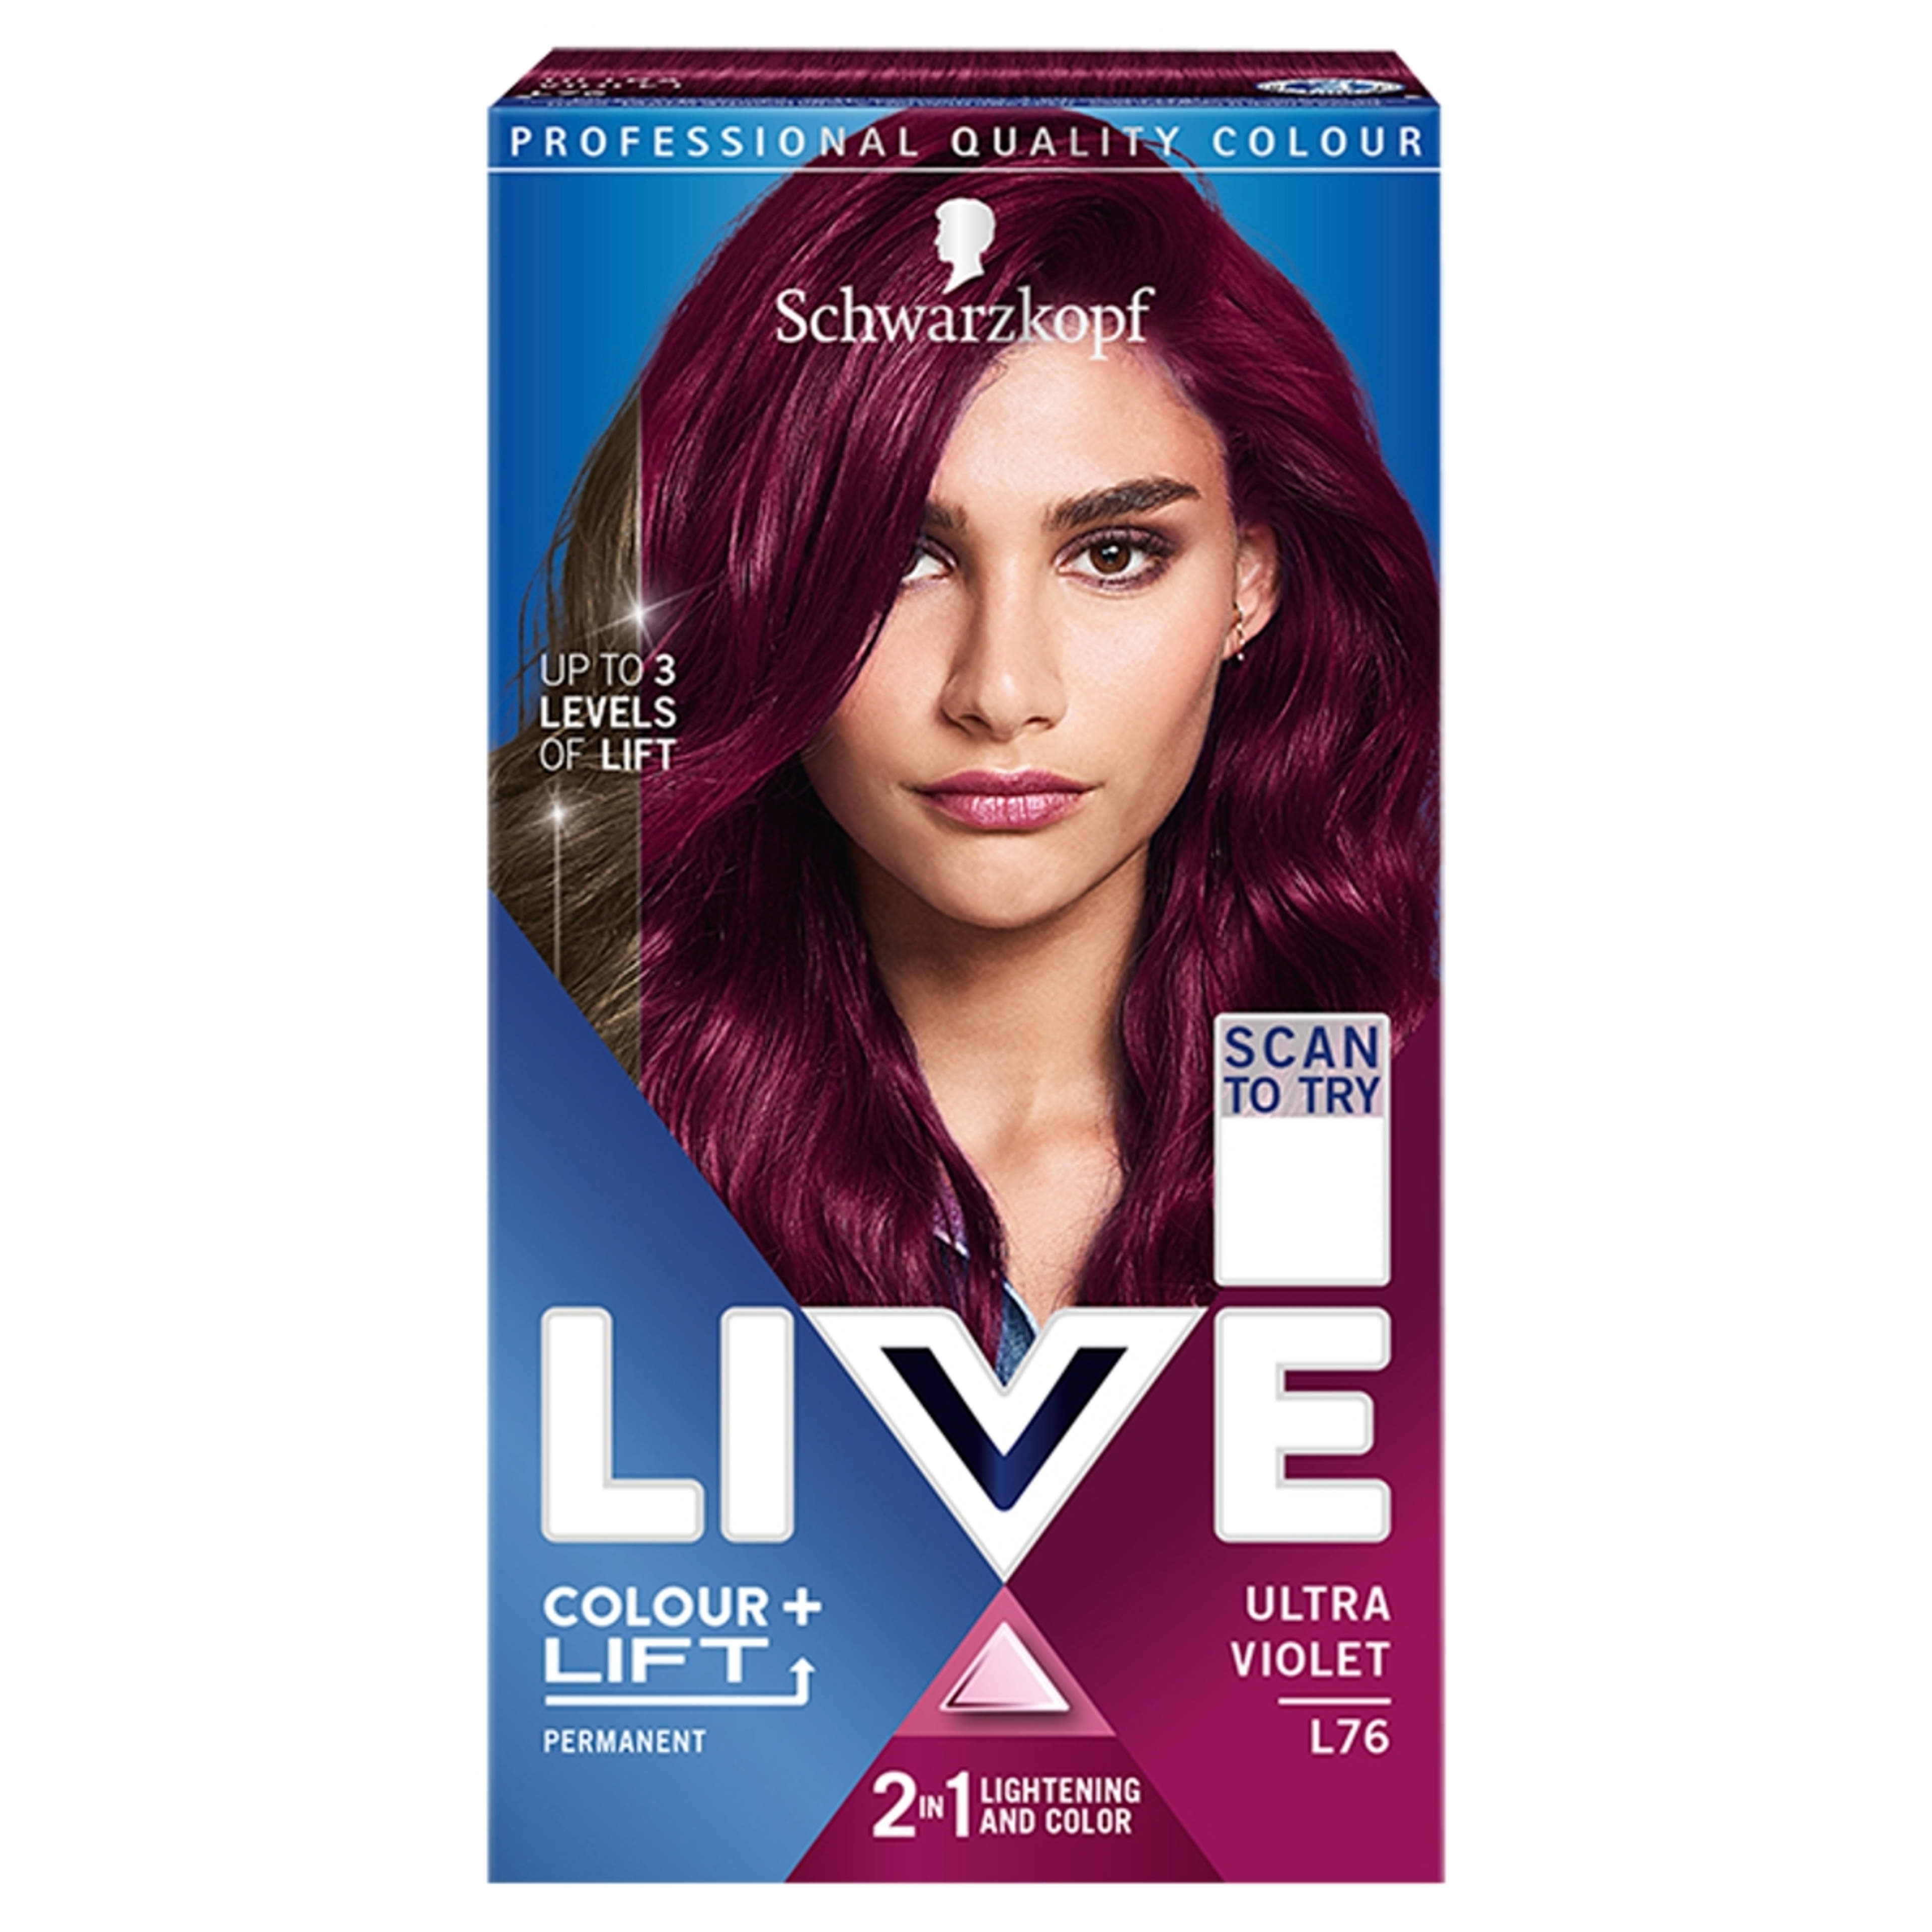 Color live lift+ l76 ultra violet - 1 db-1